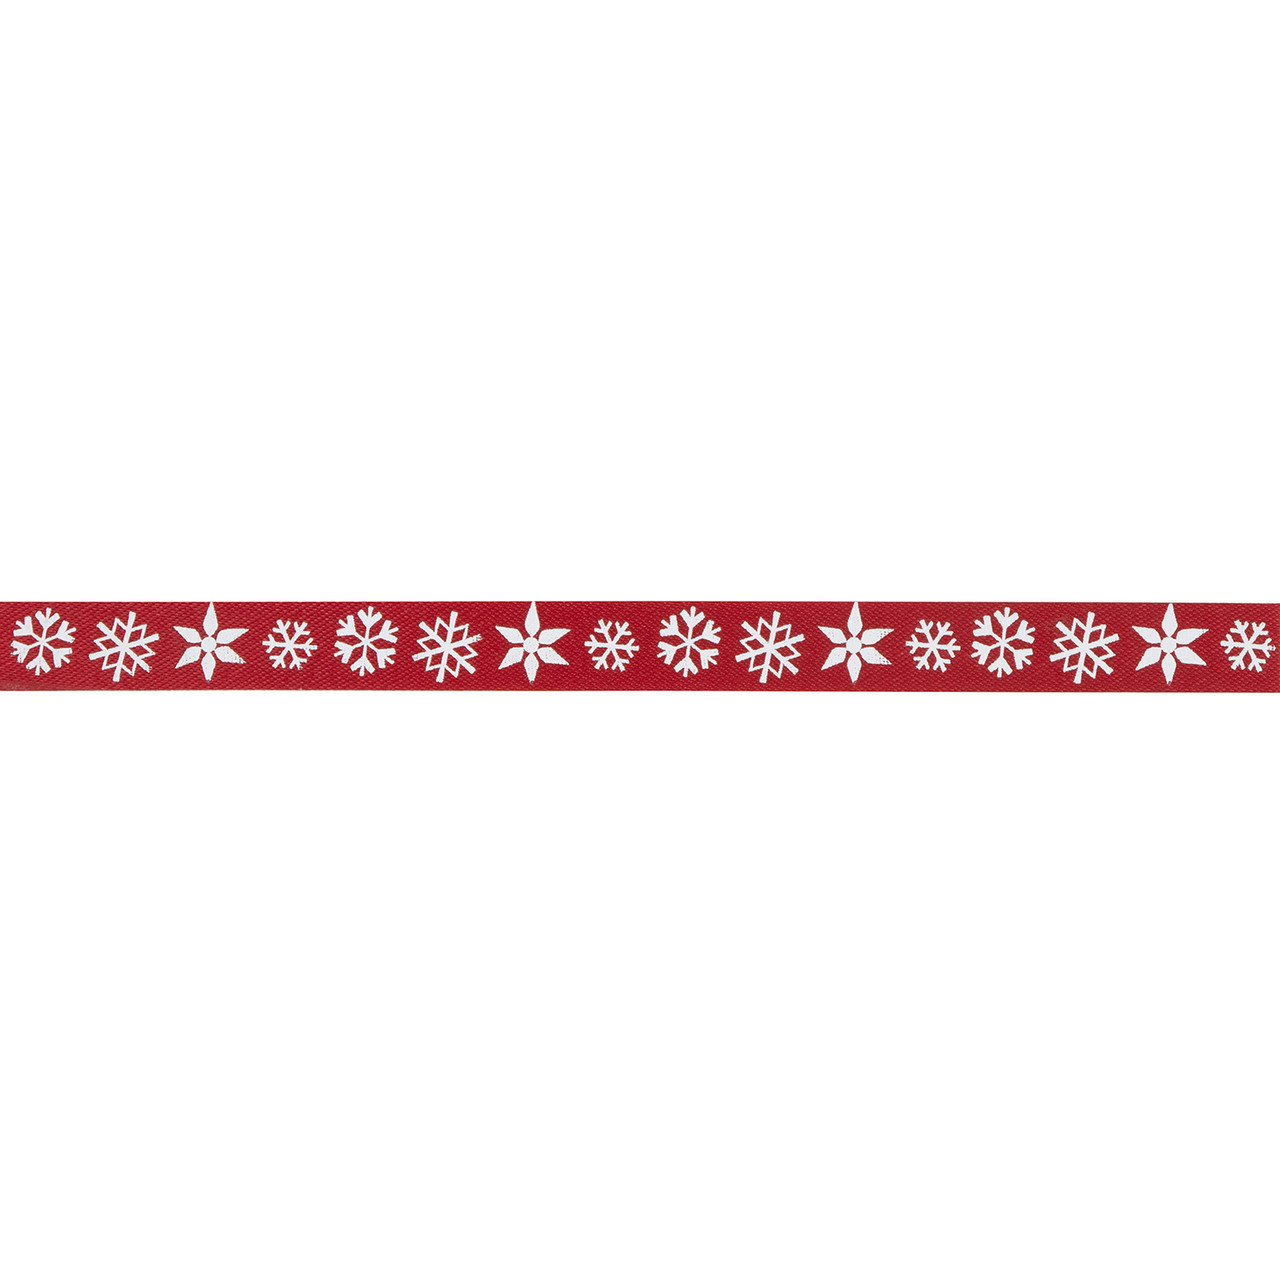 White Snowflakes on Red Ribbon